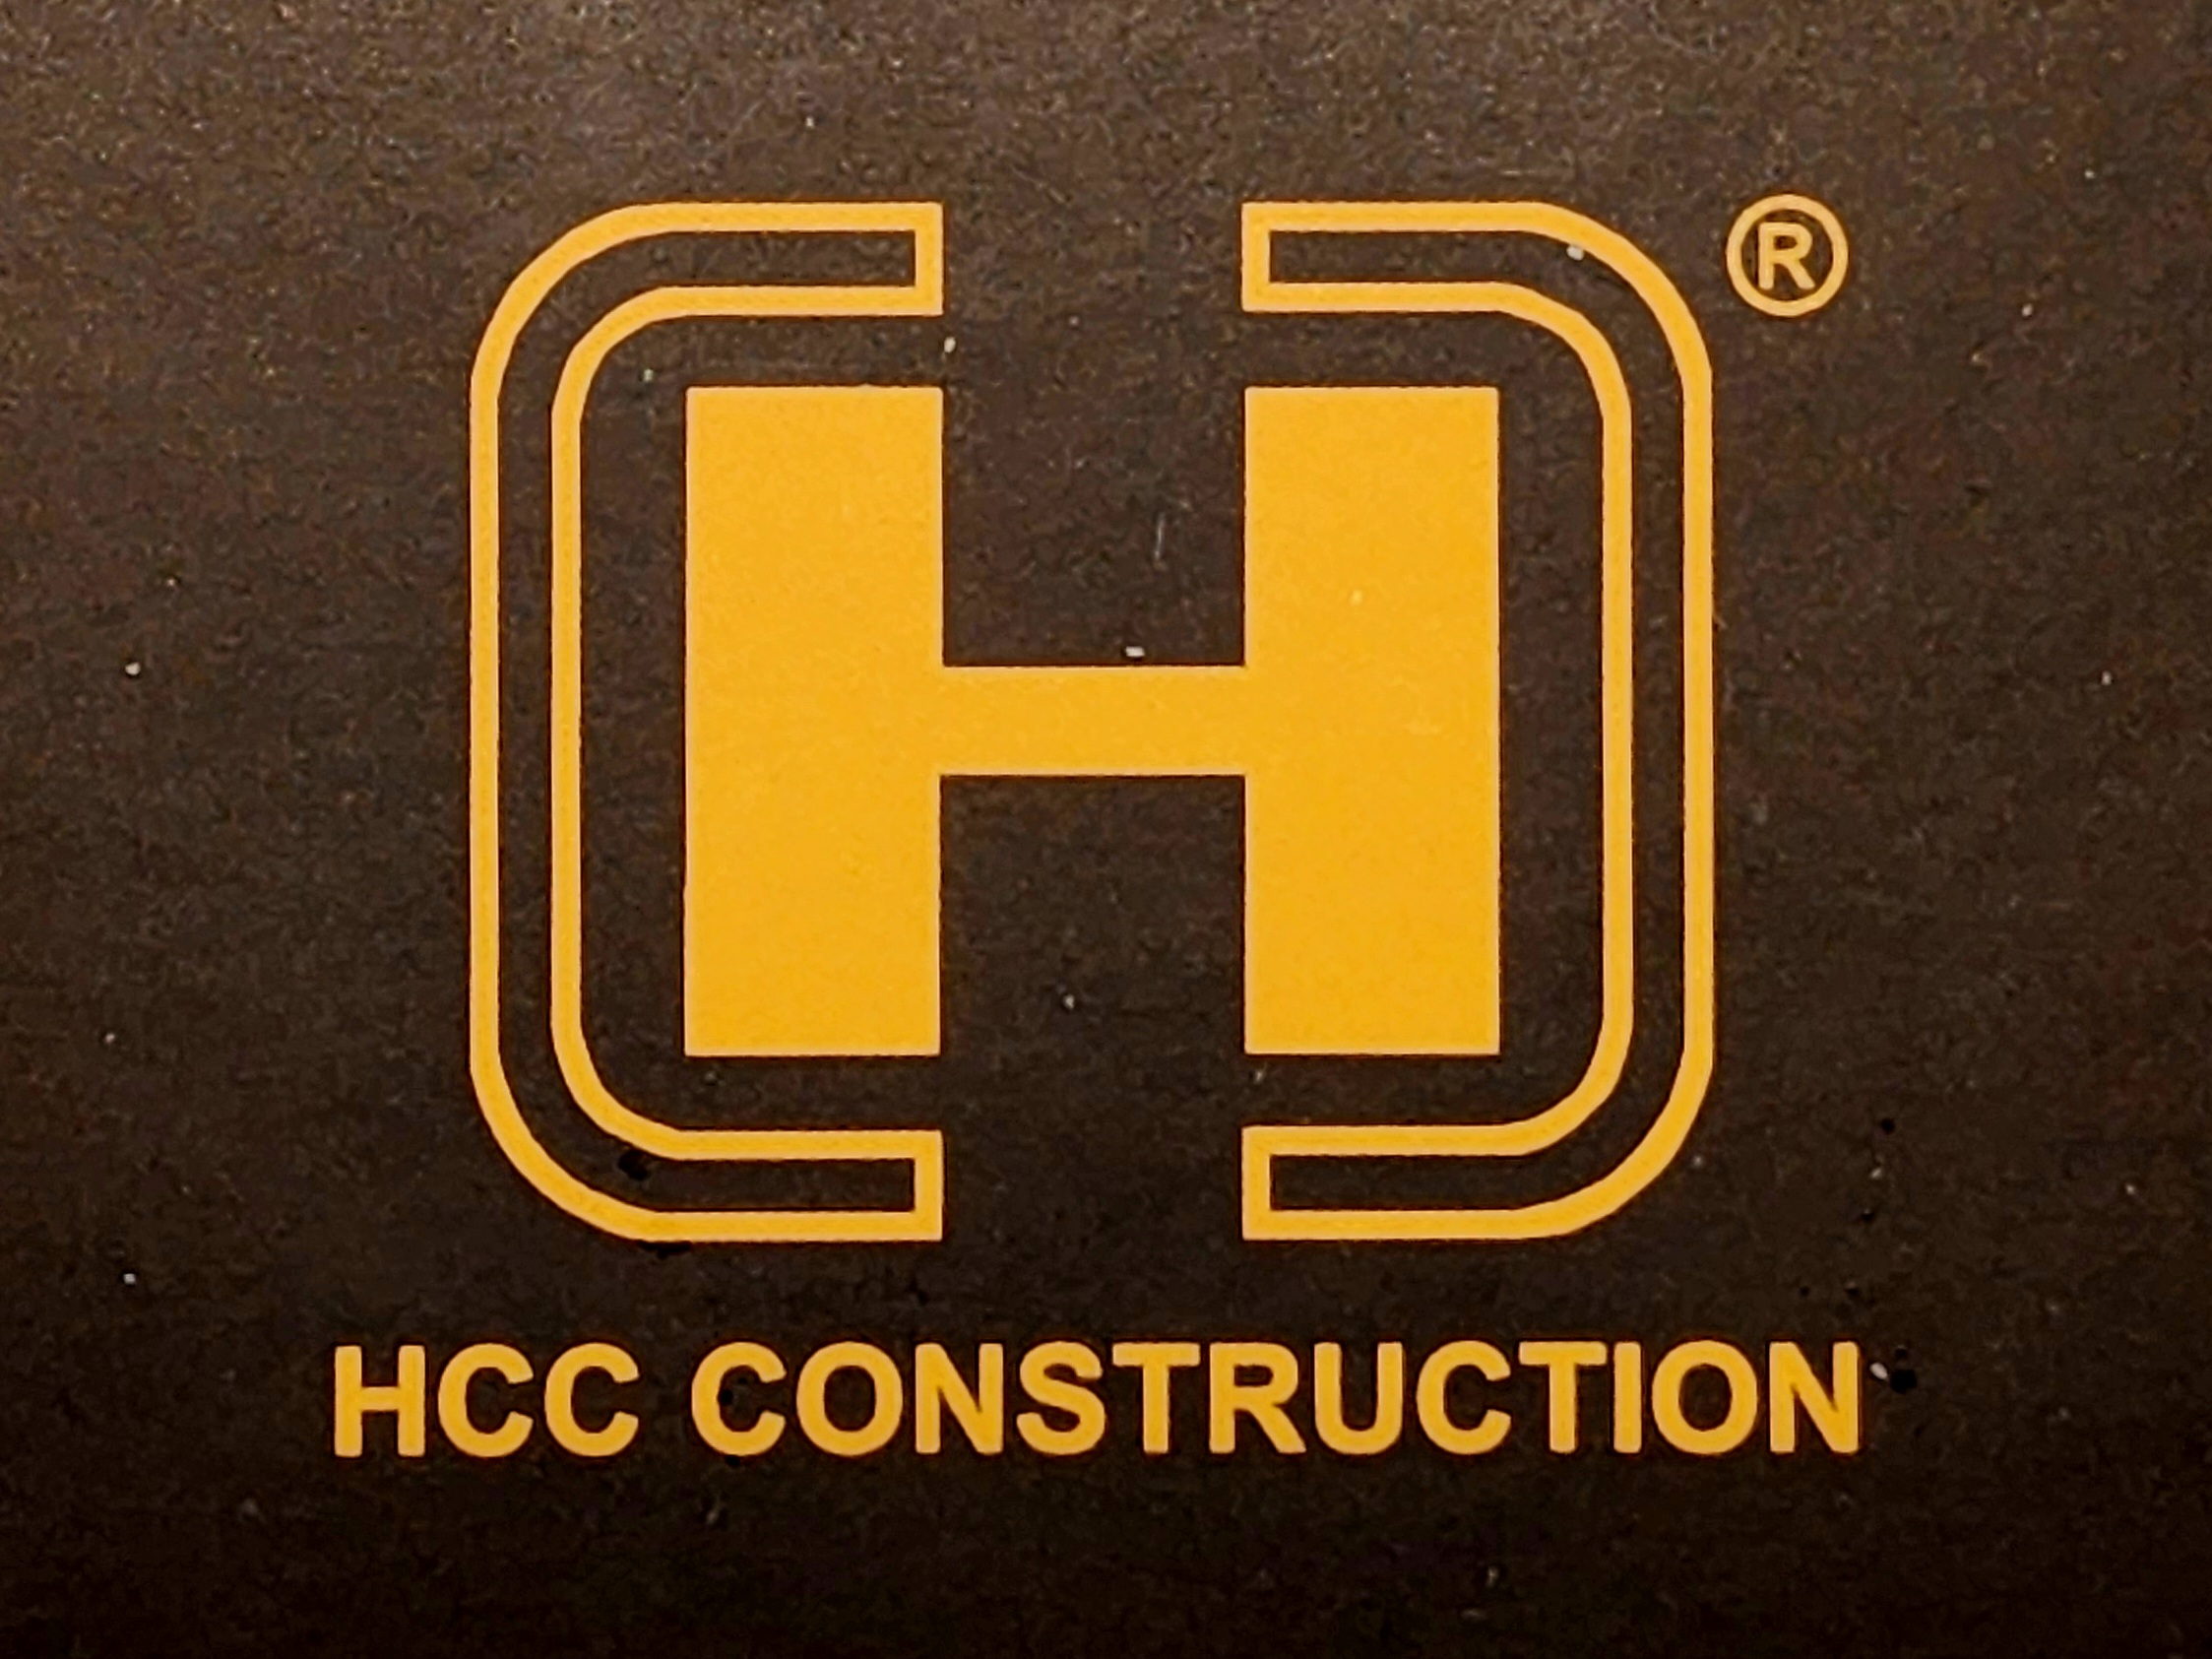 Nhan thau Xay nha tron goi - HCC Construction